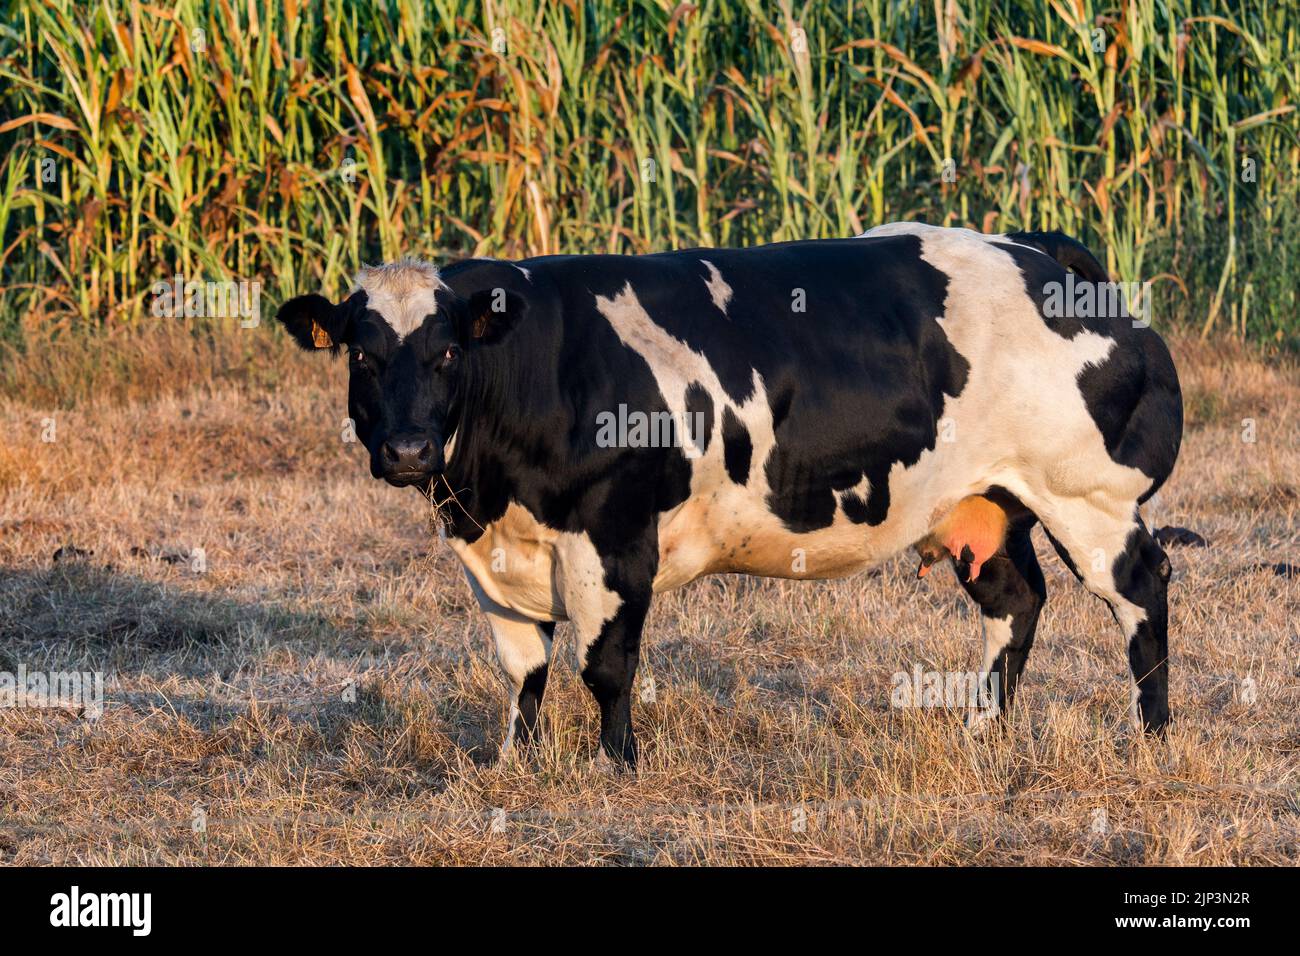 Vache frisonne Holstein noire et blanche, race de bovins laitiers, dans un pré devant le champ de maïs / champ de maïs / champ de maïs en été au lever du soleil Banque D'Images